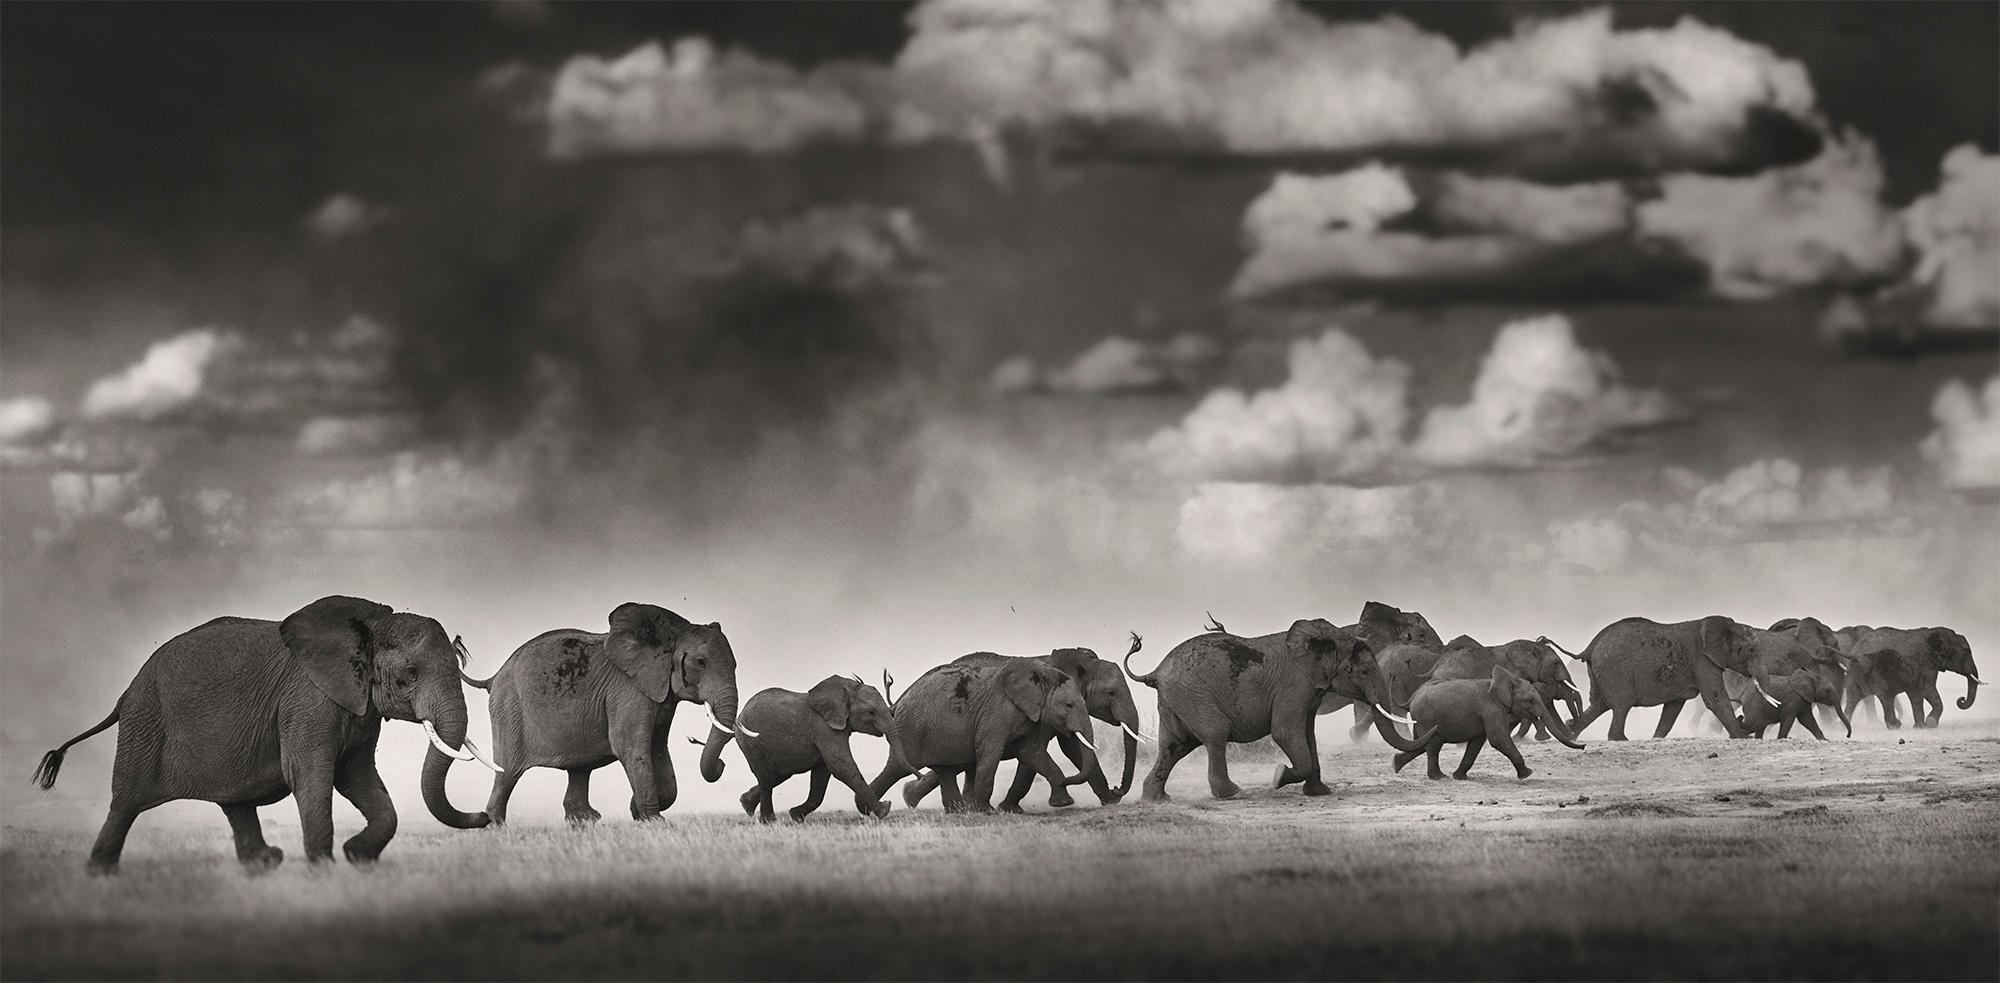 Thunderstorm, Kenya, Elefant, Fotografie, Platin Palladium, Landschaft (Zeitgenössisch), Photograph, von Joachim Schmeisser